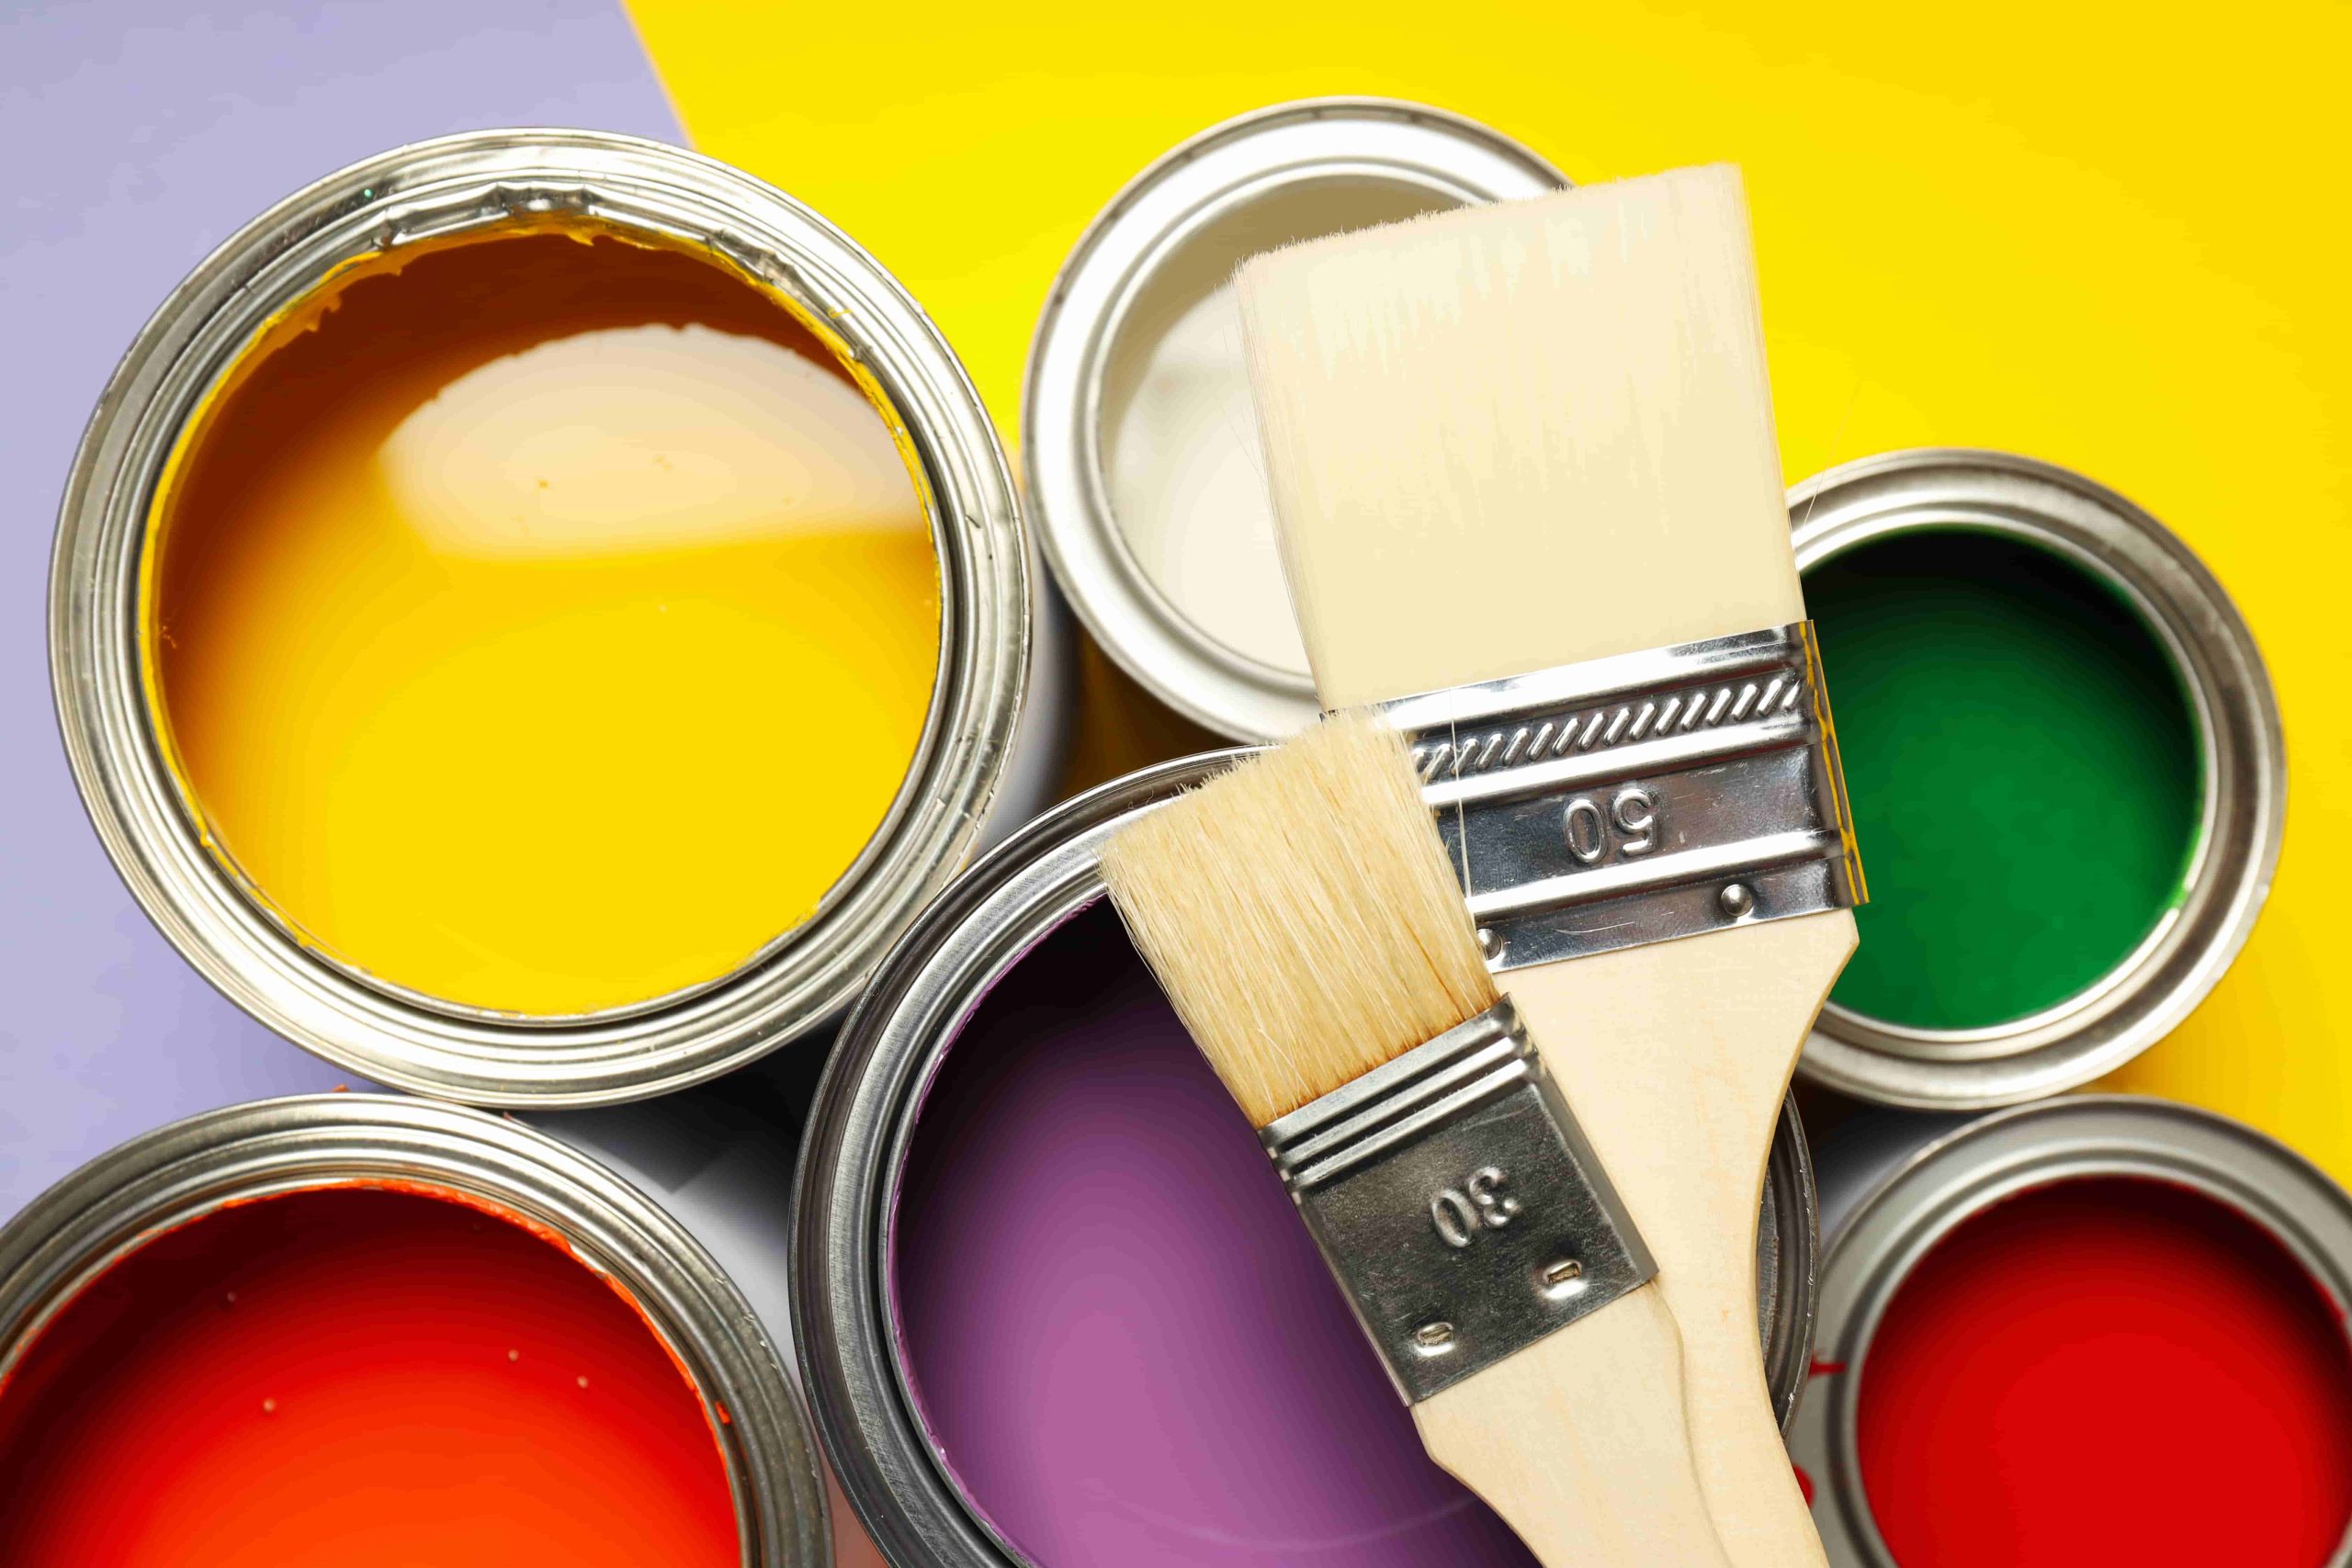 אמינות ומקצועיות: שלבים חשובים בבחירת צבען לצביעת הבית -